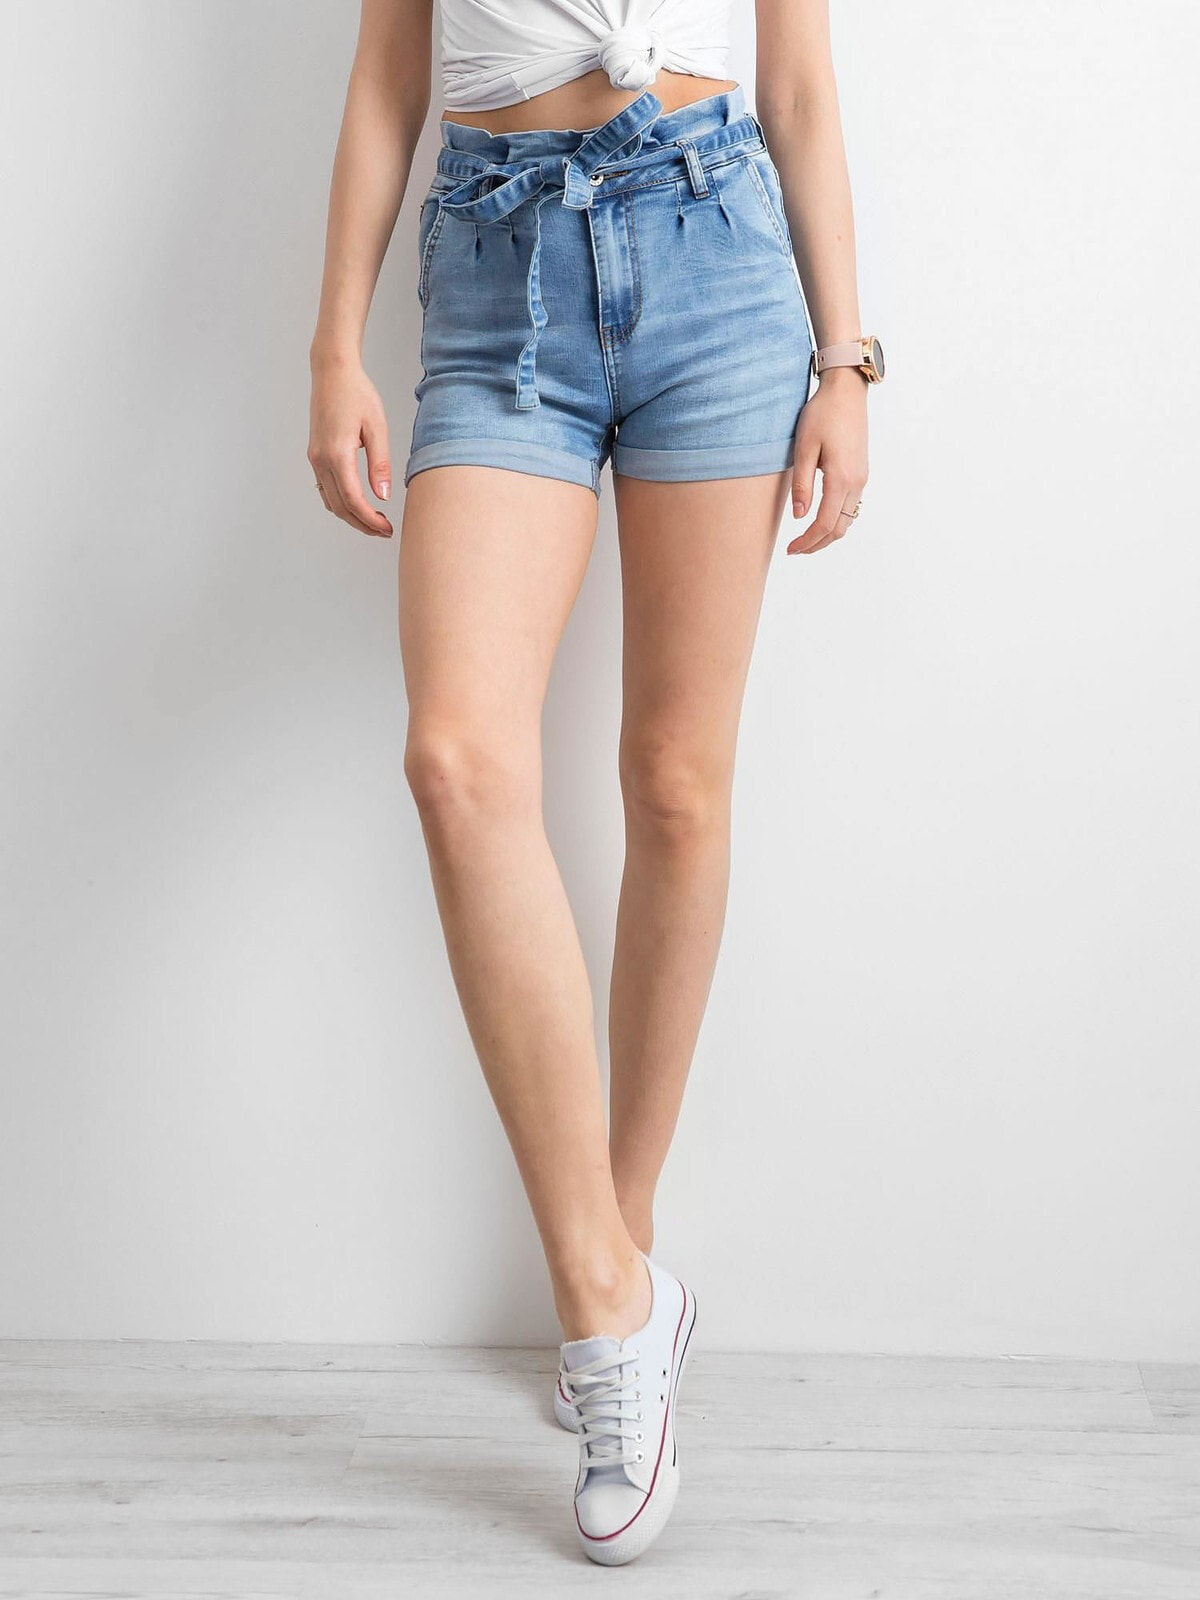 Женские джинсовые шорты с высокой талией Factory Price